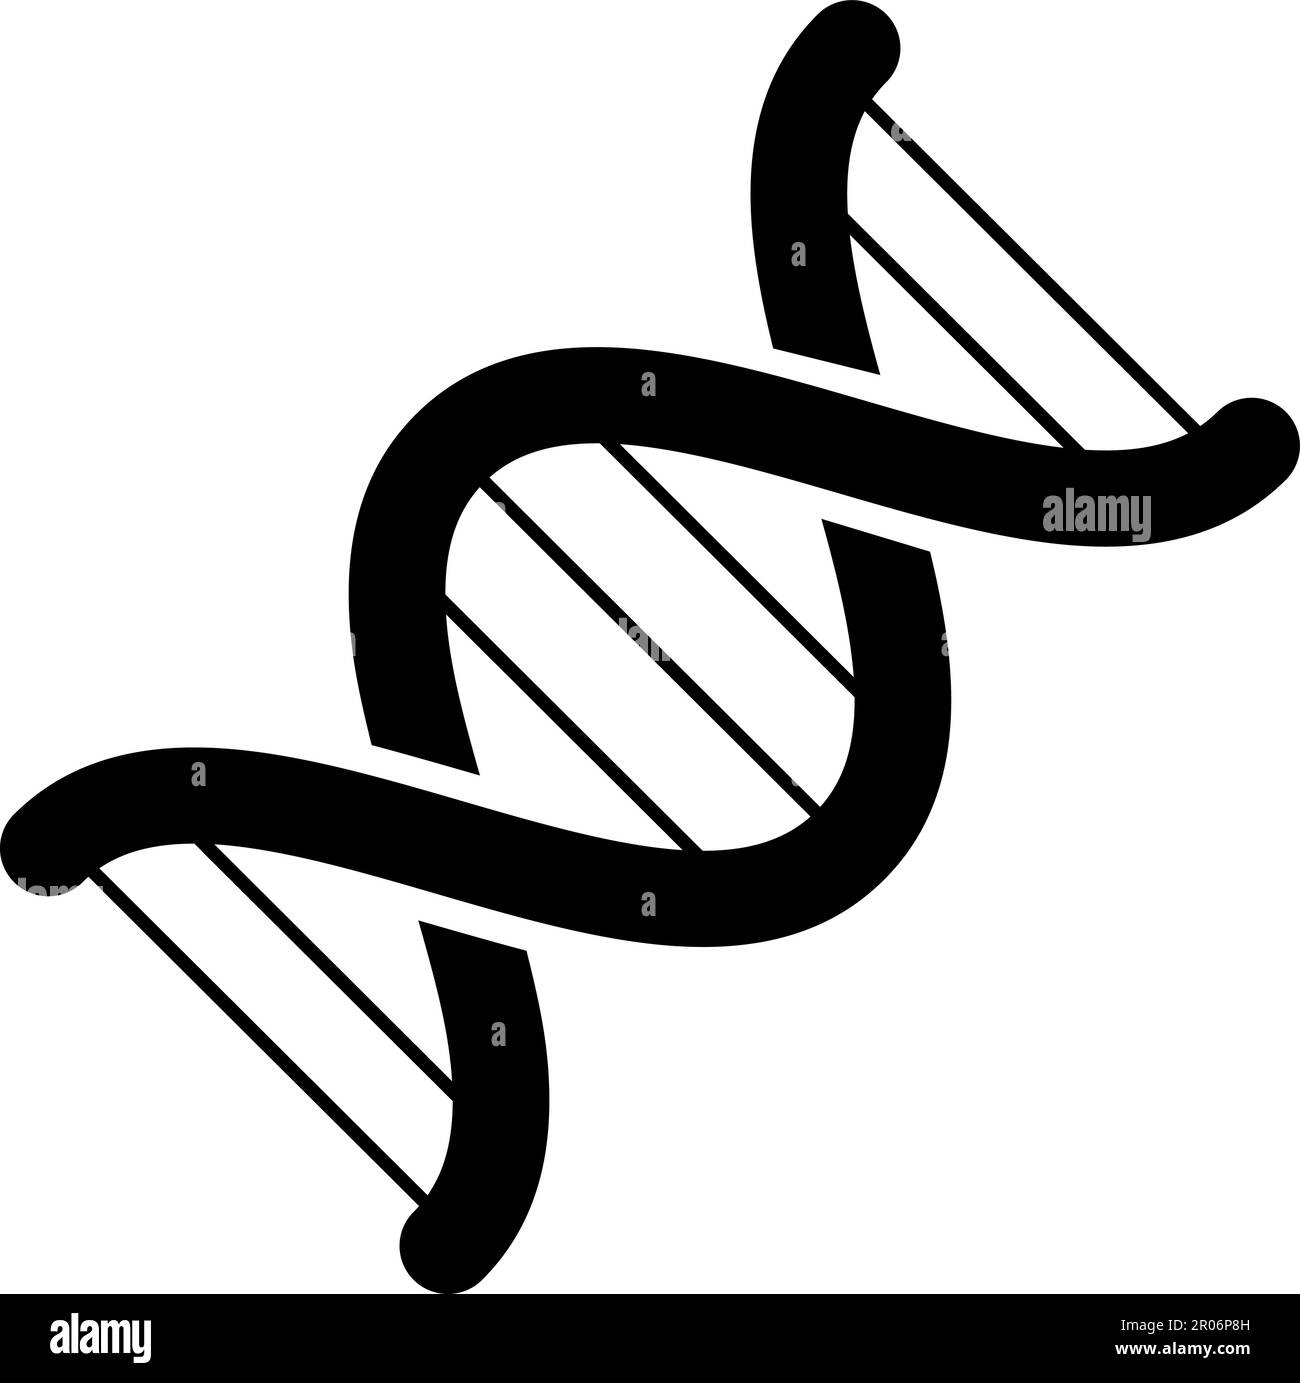 DNA-Molekül-verbundene chemische Bindung. Strukturuntersuchungen an Zellen und Proteinen im biologischen Labor. Einfaches schwarz-weißes Silhouettenvektorsymbol Stock Vektor